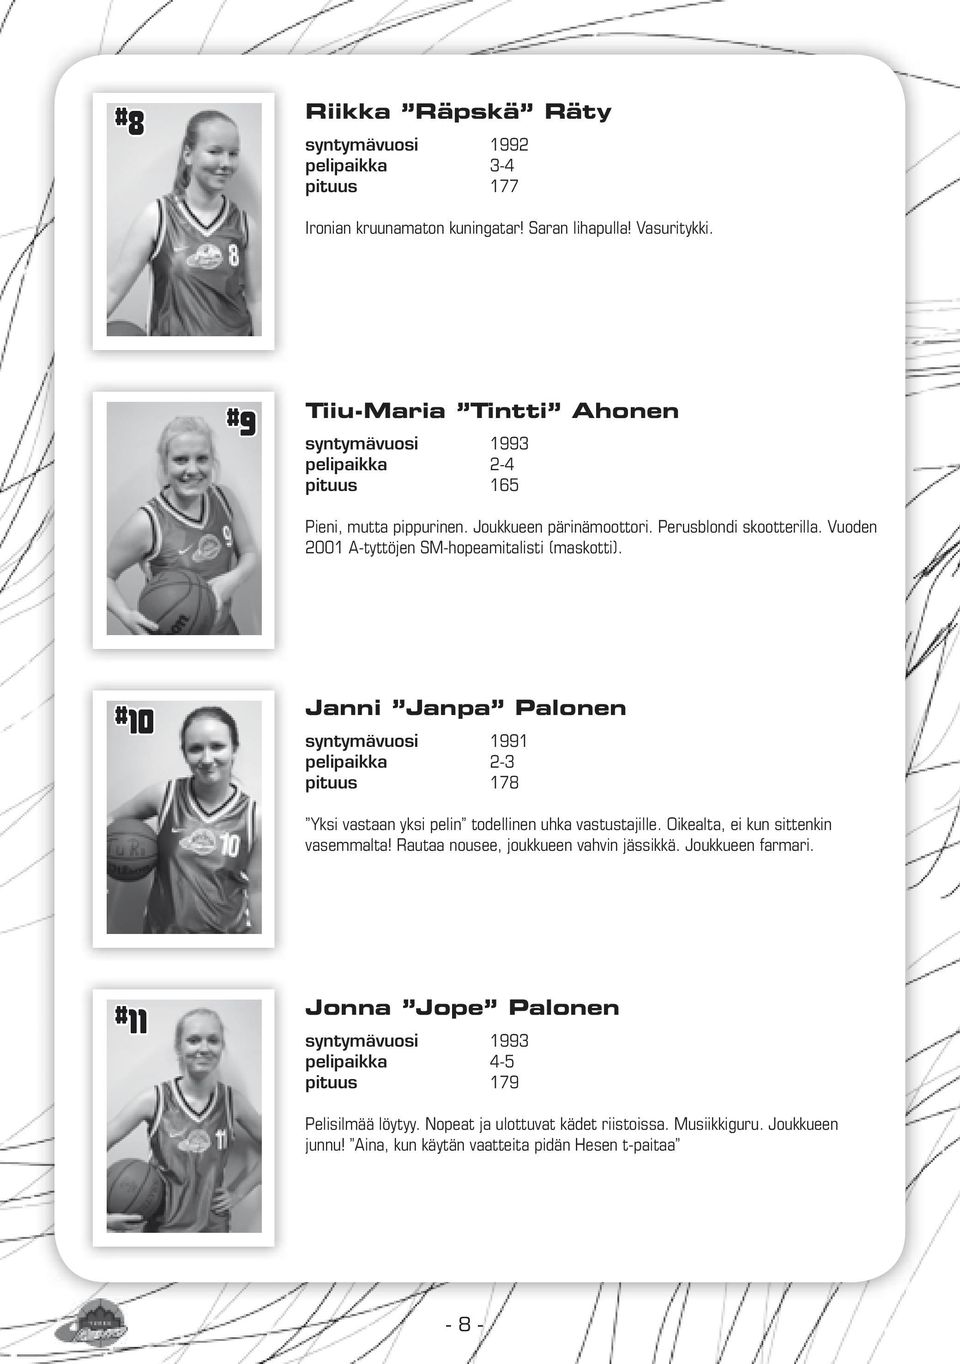 Vuoden 2001 A-tyttöjen SM-hopeamitalisti (maskotti). # 10 Janni Janpa Palonen syntymävuosi 1991 pelipaikka 2-3 pituus 178 Yksi vastaan yksi pelin todellinen uhka vastustajille.